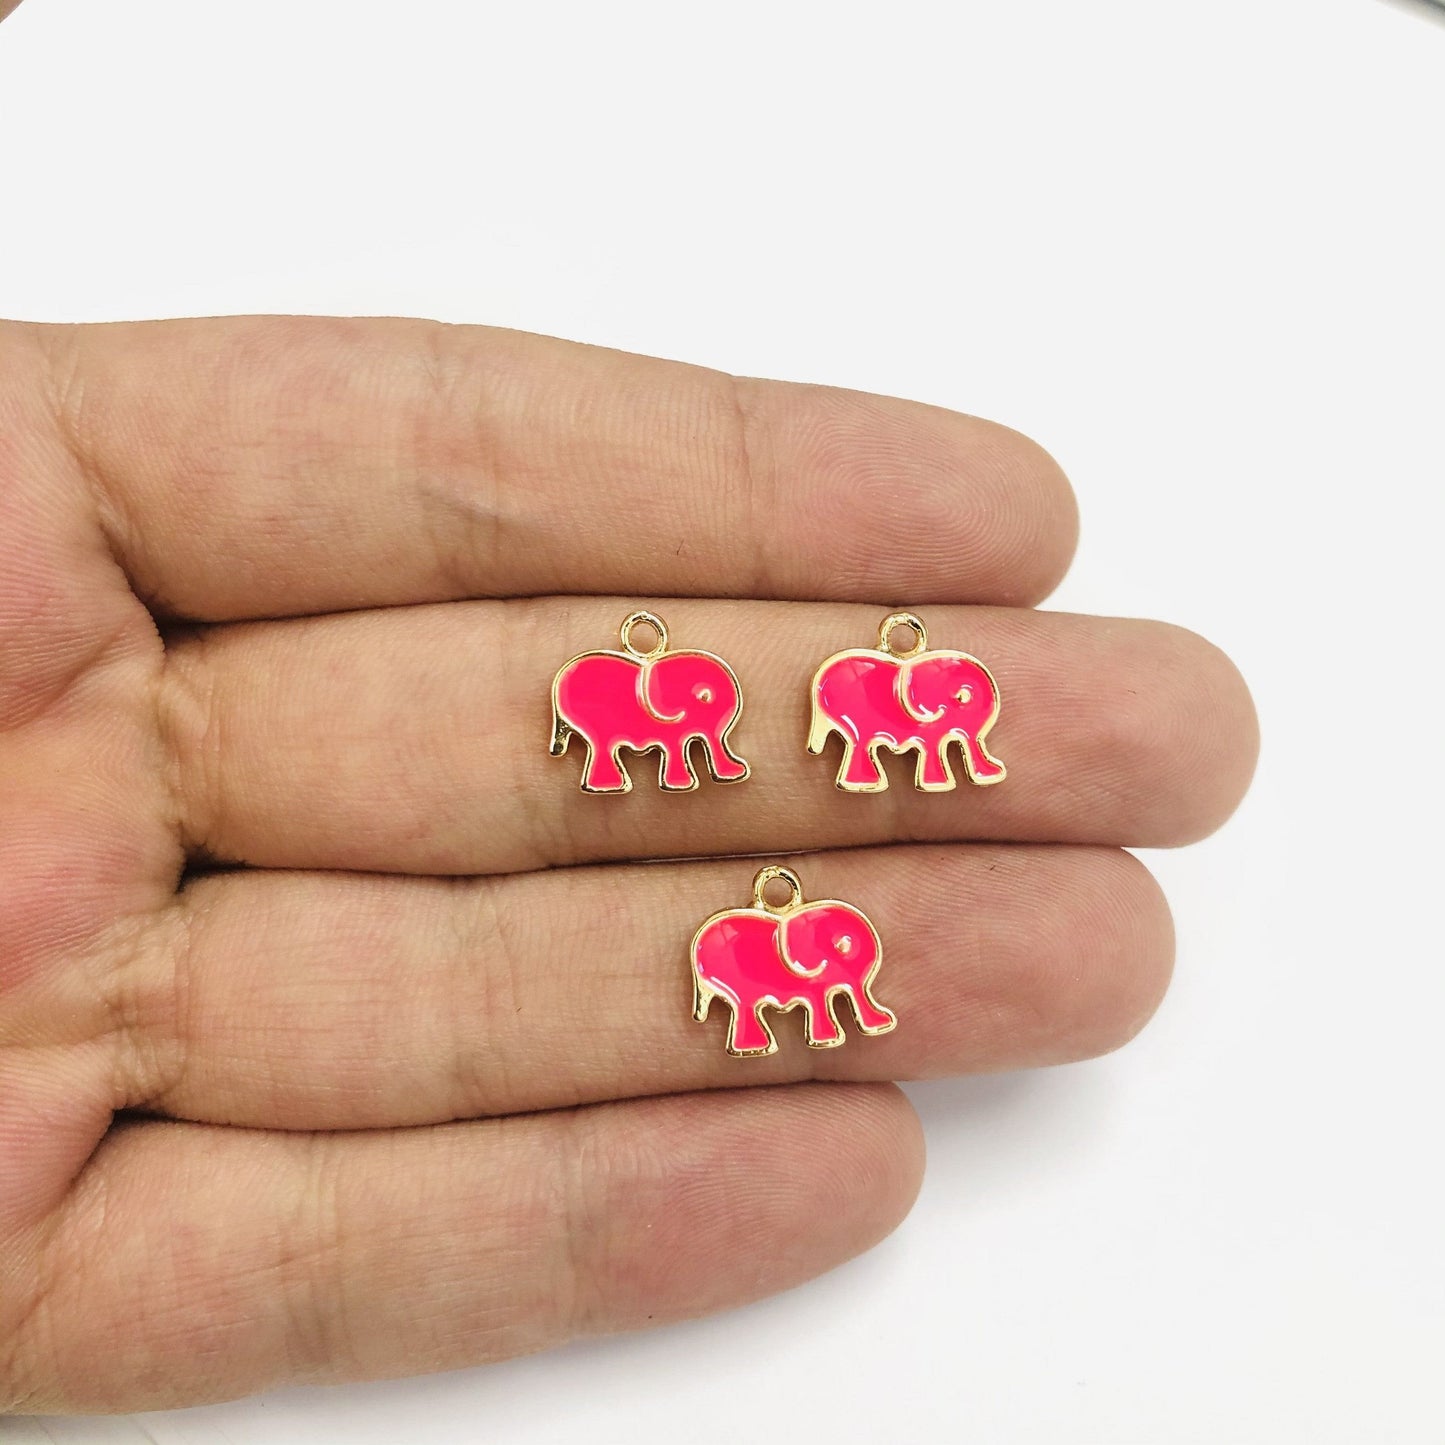 Vergoldete, emaillierte Elefanten-Schaukelhalterung – Neonpink